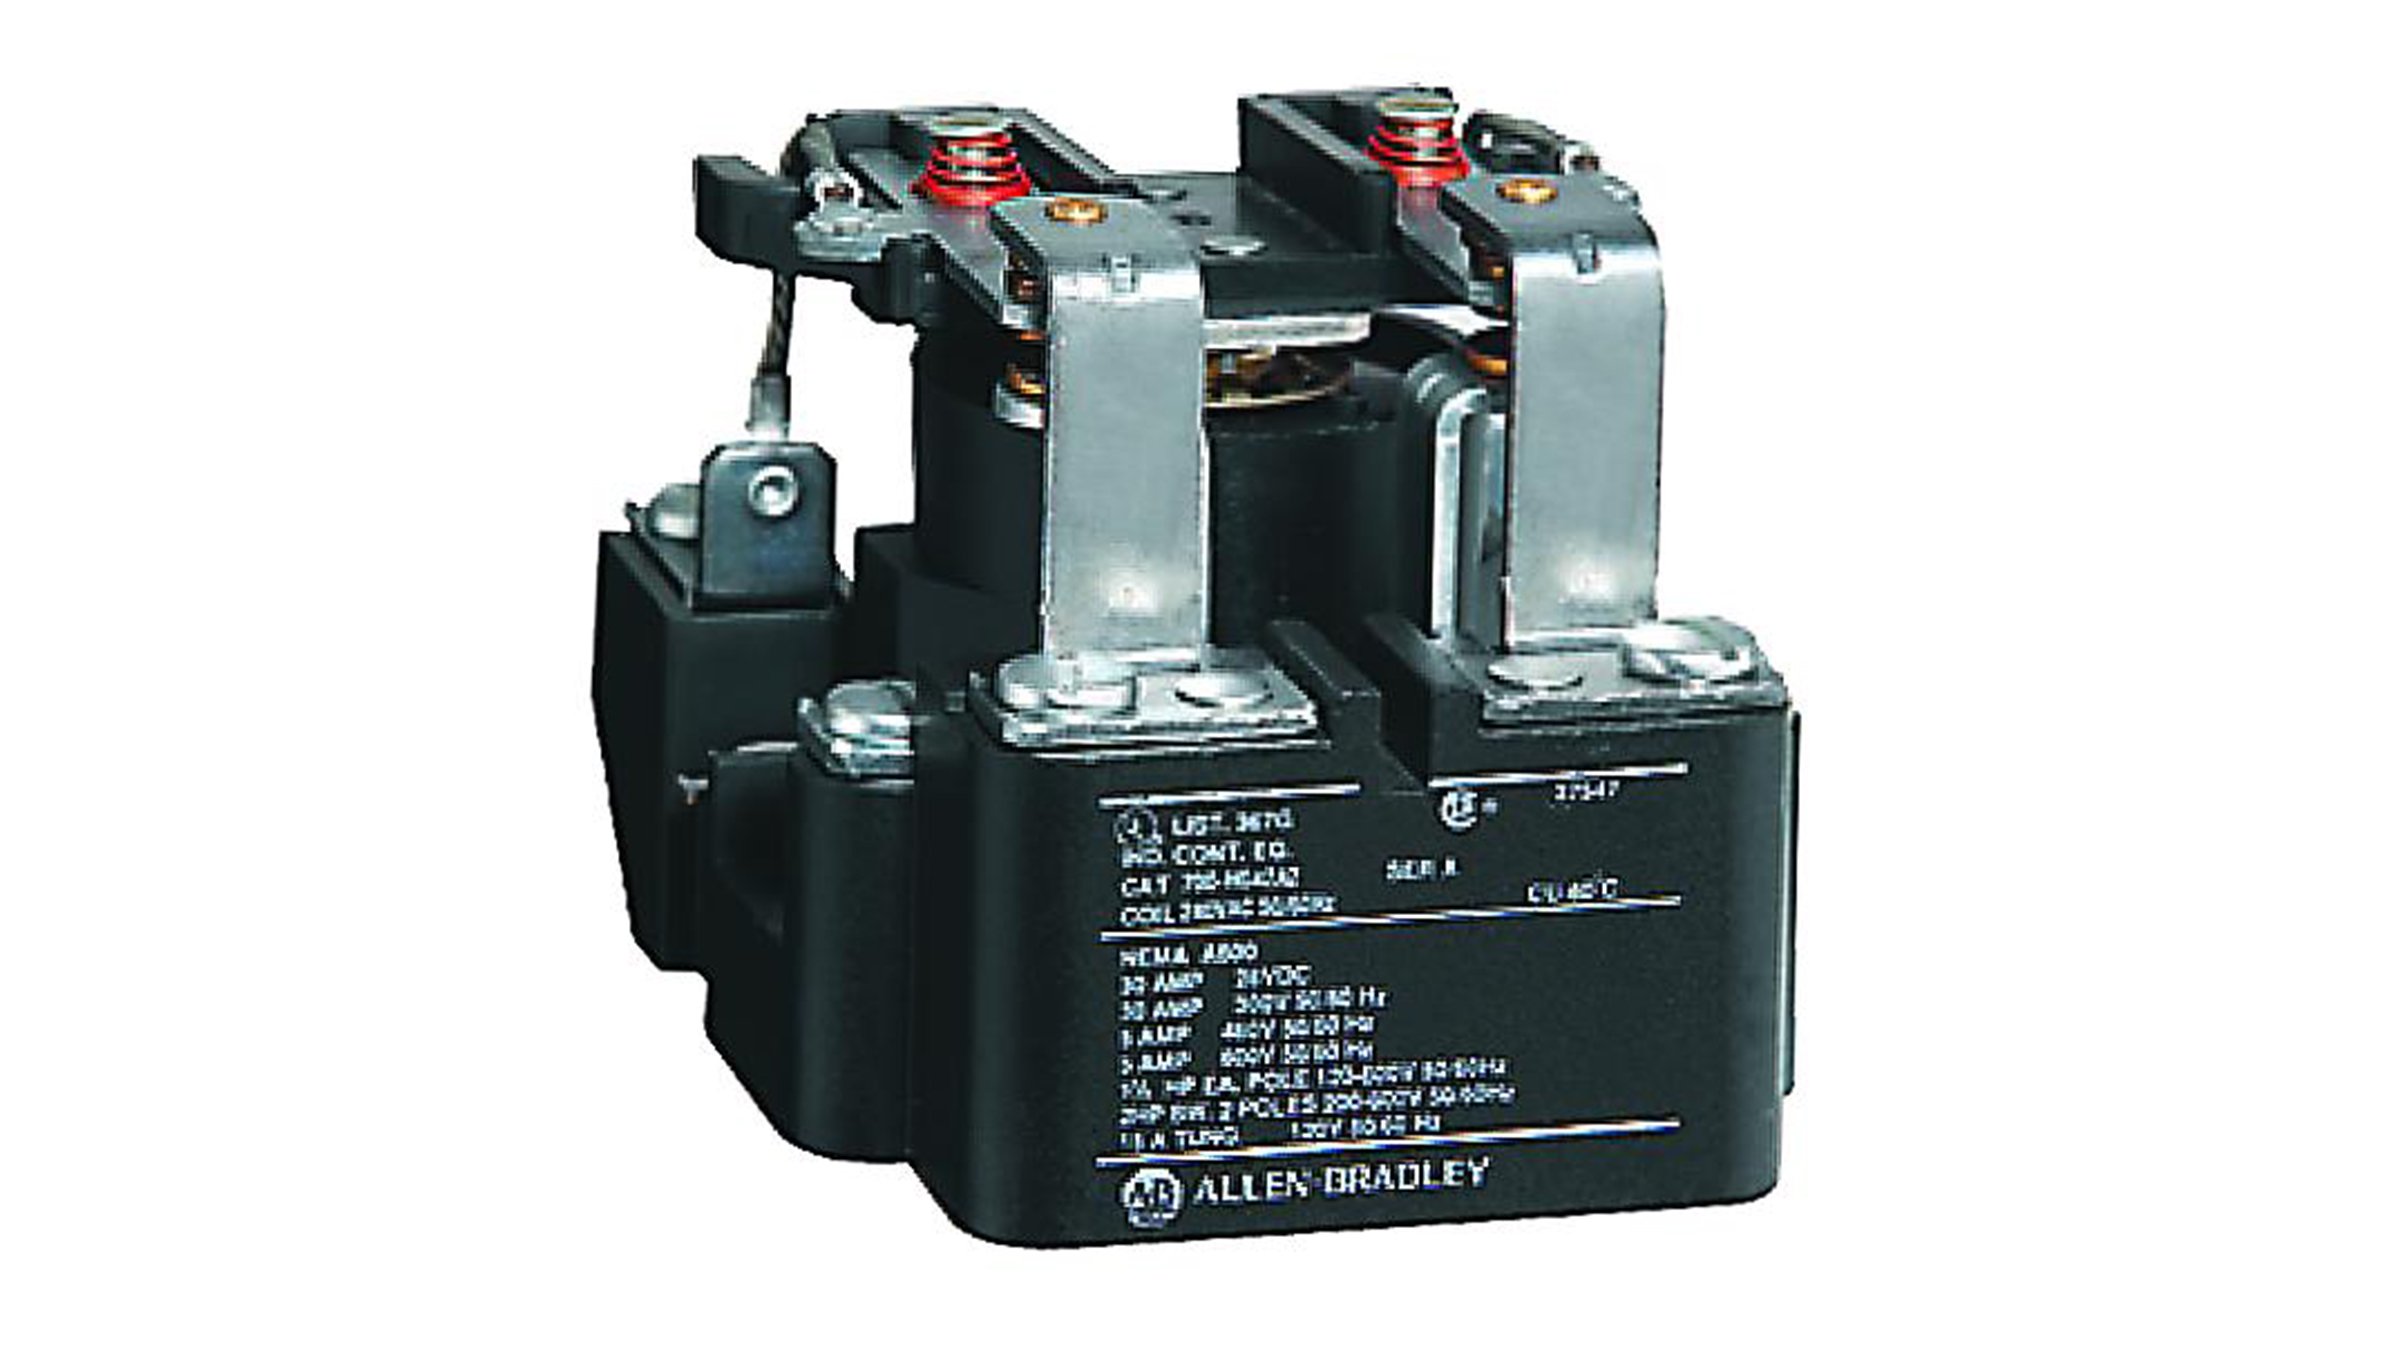 Les relais d'alimentation Allen-Bradley, série 700-HG conviennent pour la commutation de charges c.c.